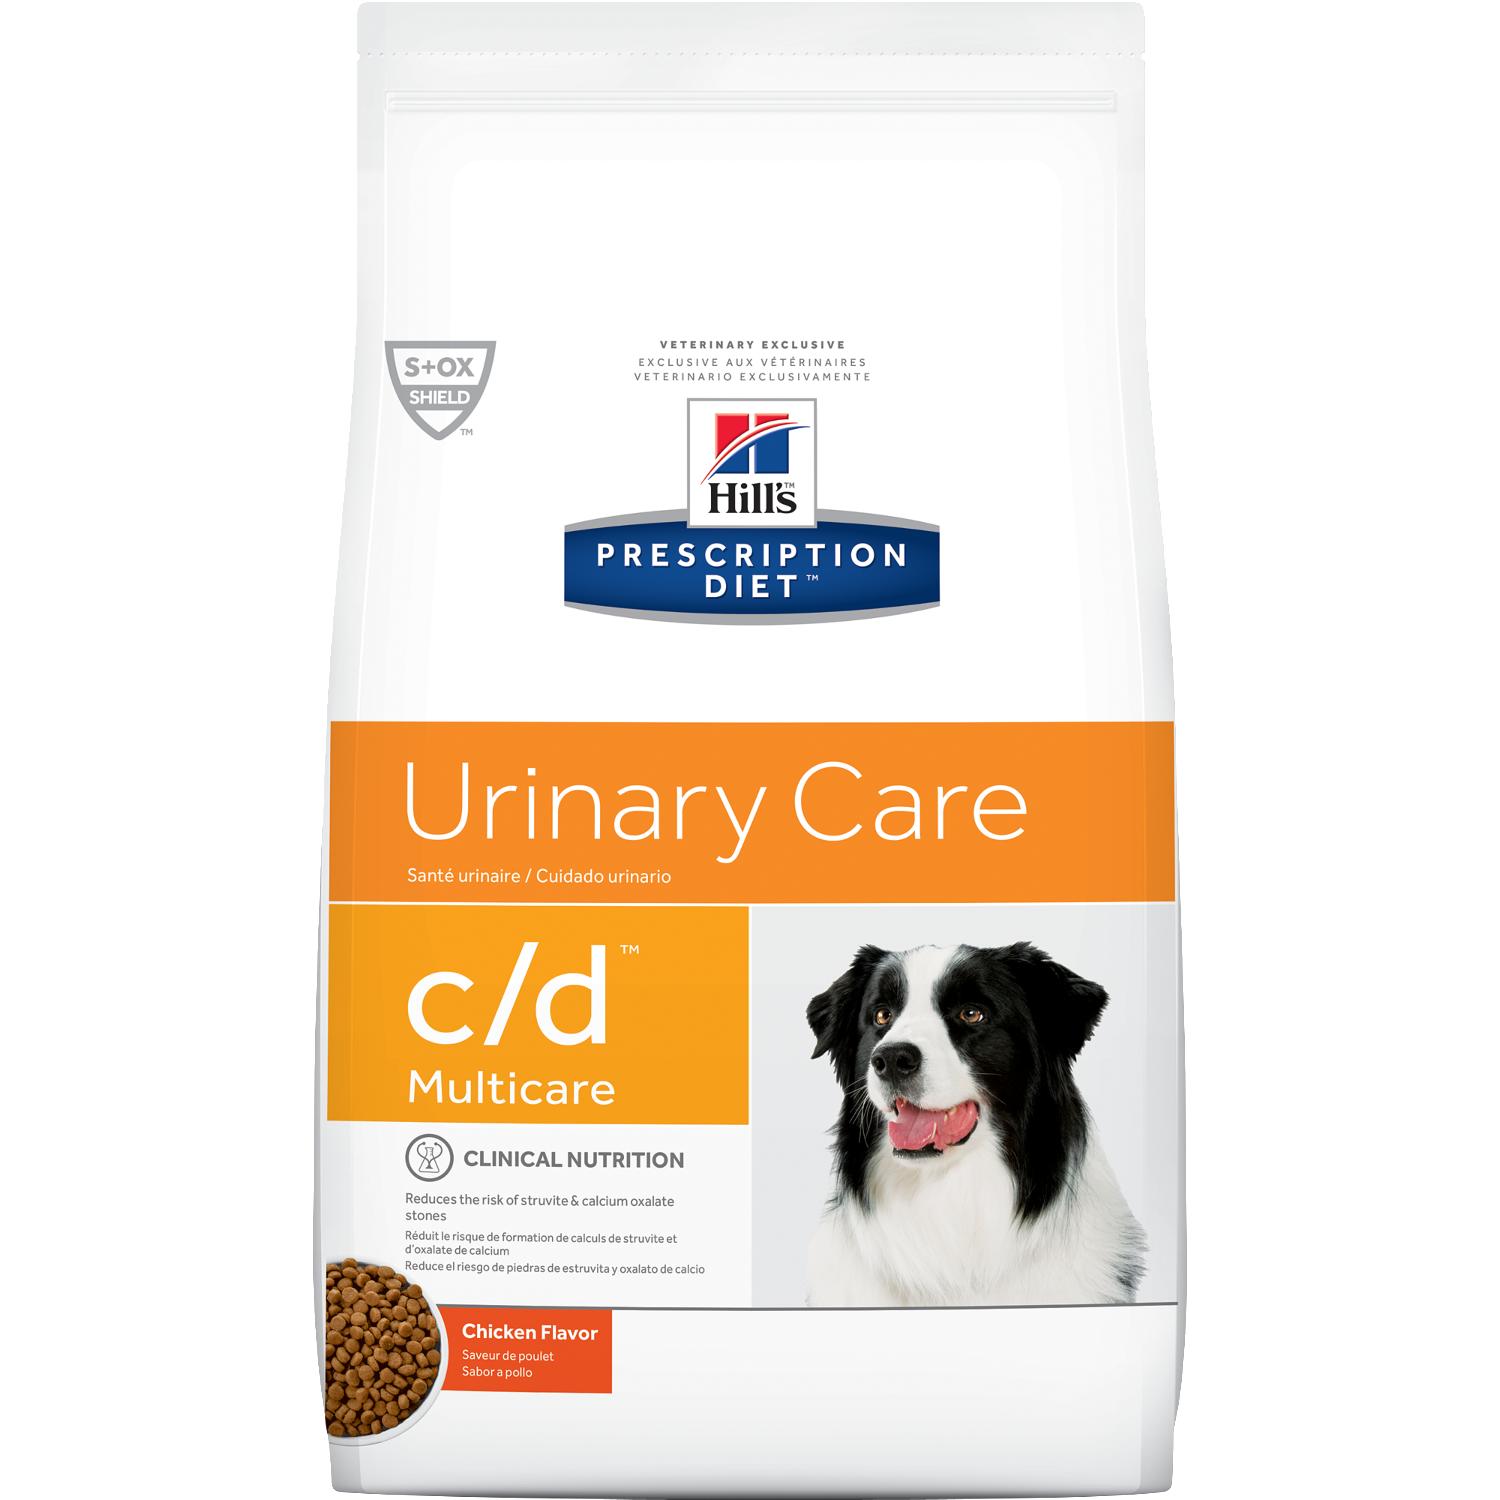 Hills Prescription Diet perros urinary care C/D multicare pollo - 3.85 K